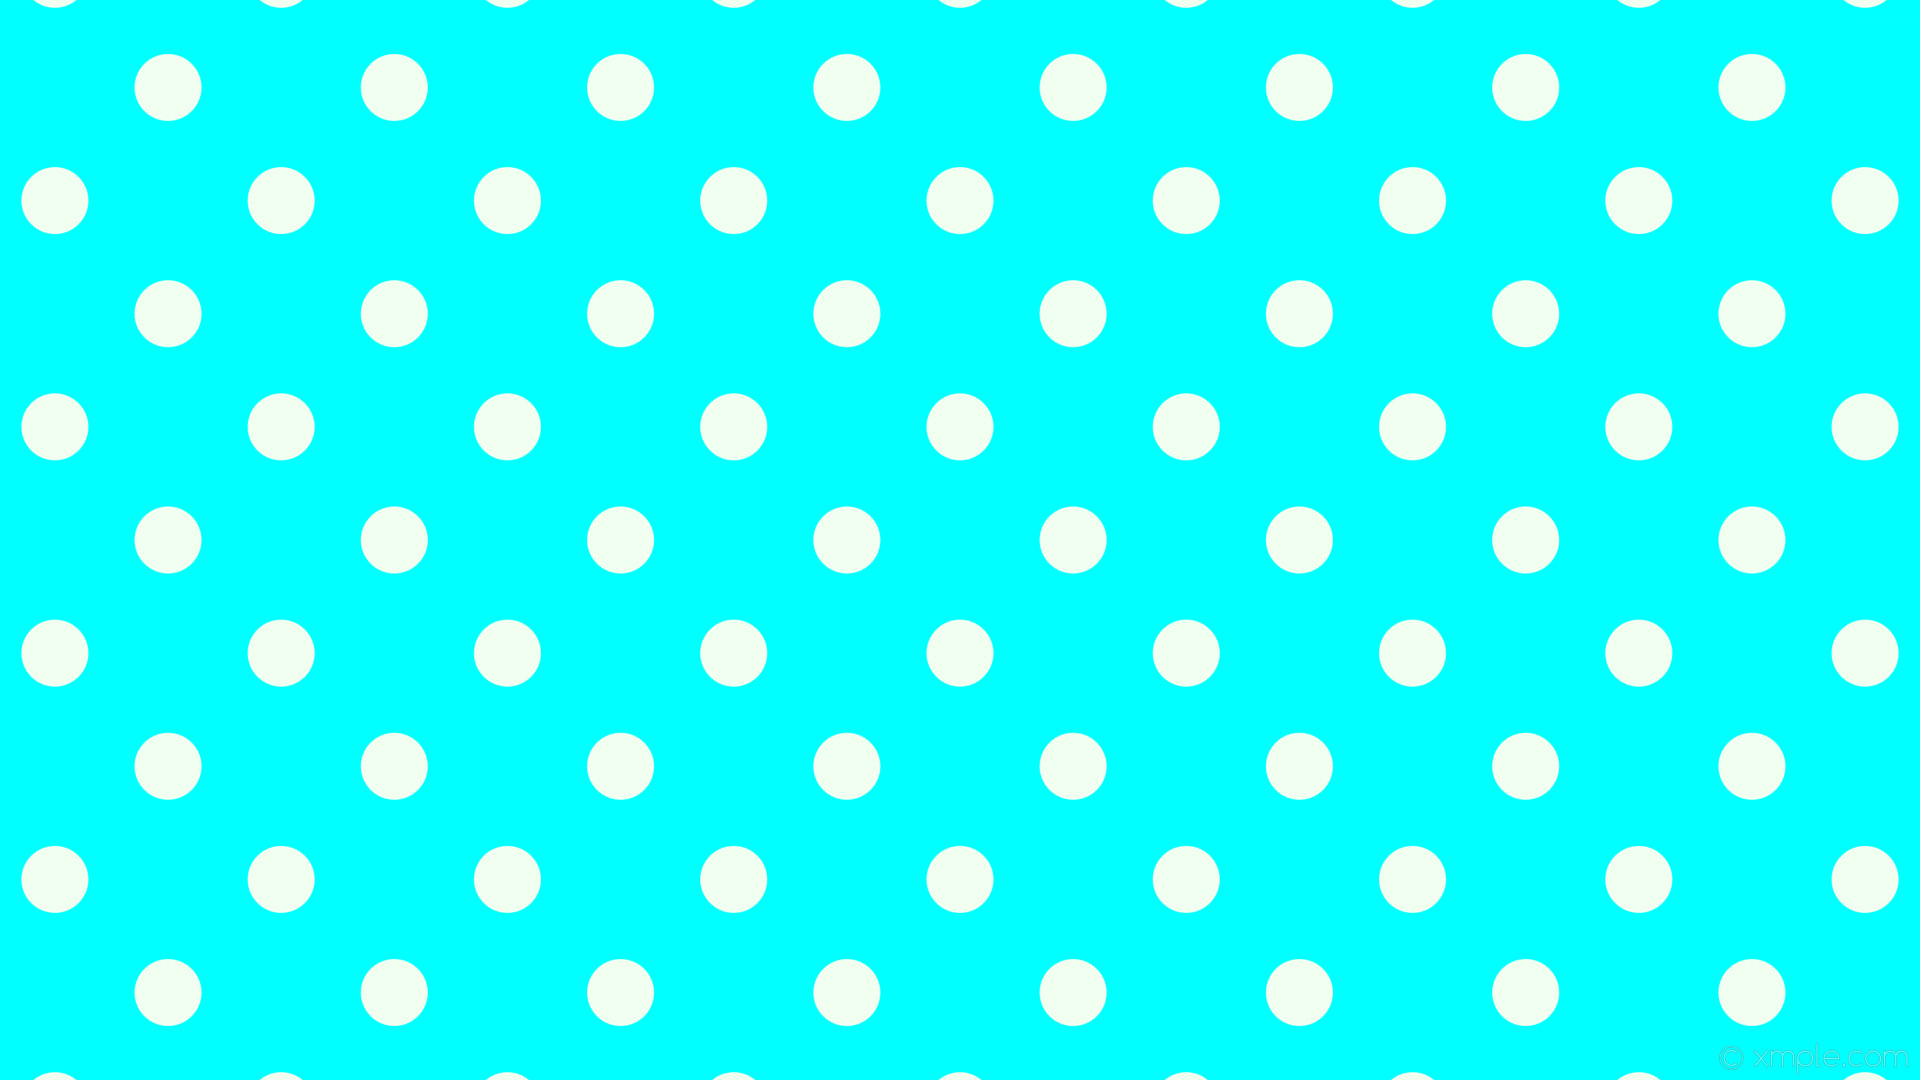 Wallpaper white spots blue polka dots aqua cyan honeydew ffff #f0fff0 135 67px